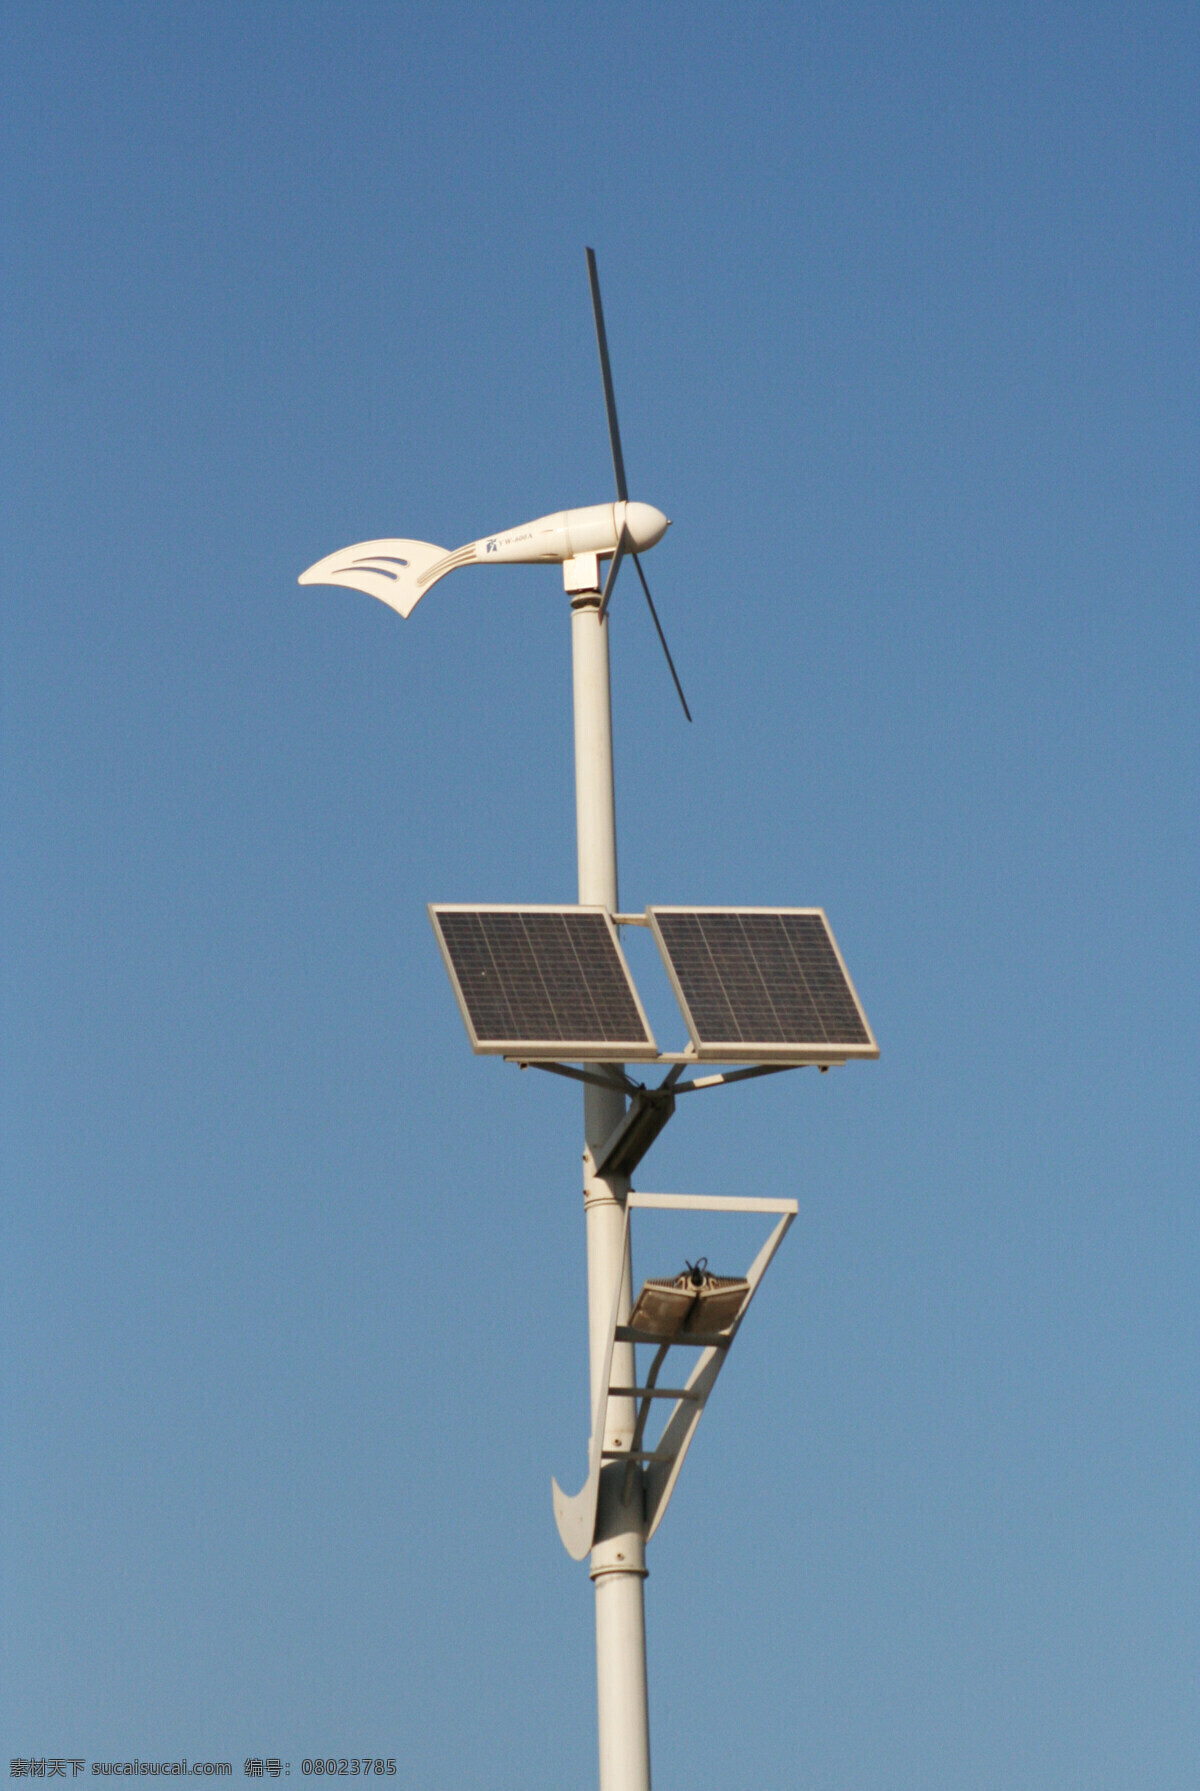 太阳能 风能 路灯 风能路灯一盏 太阳能板 风扇 蓝天 现代科技 蓝色